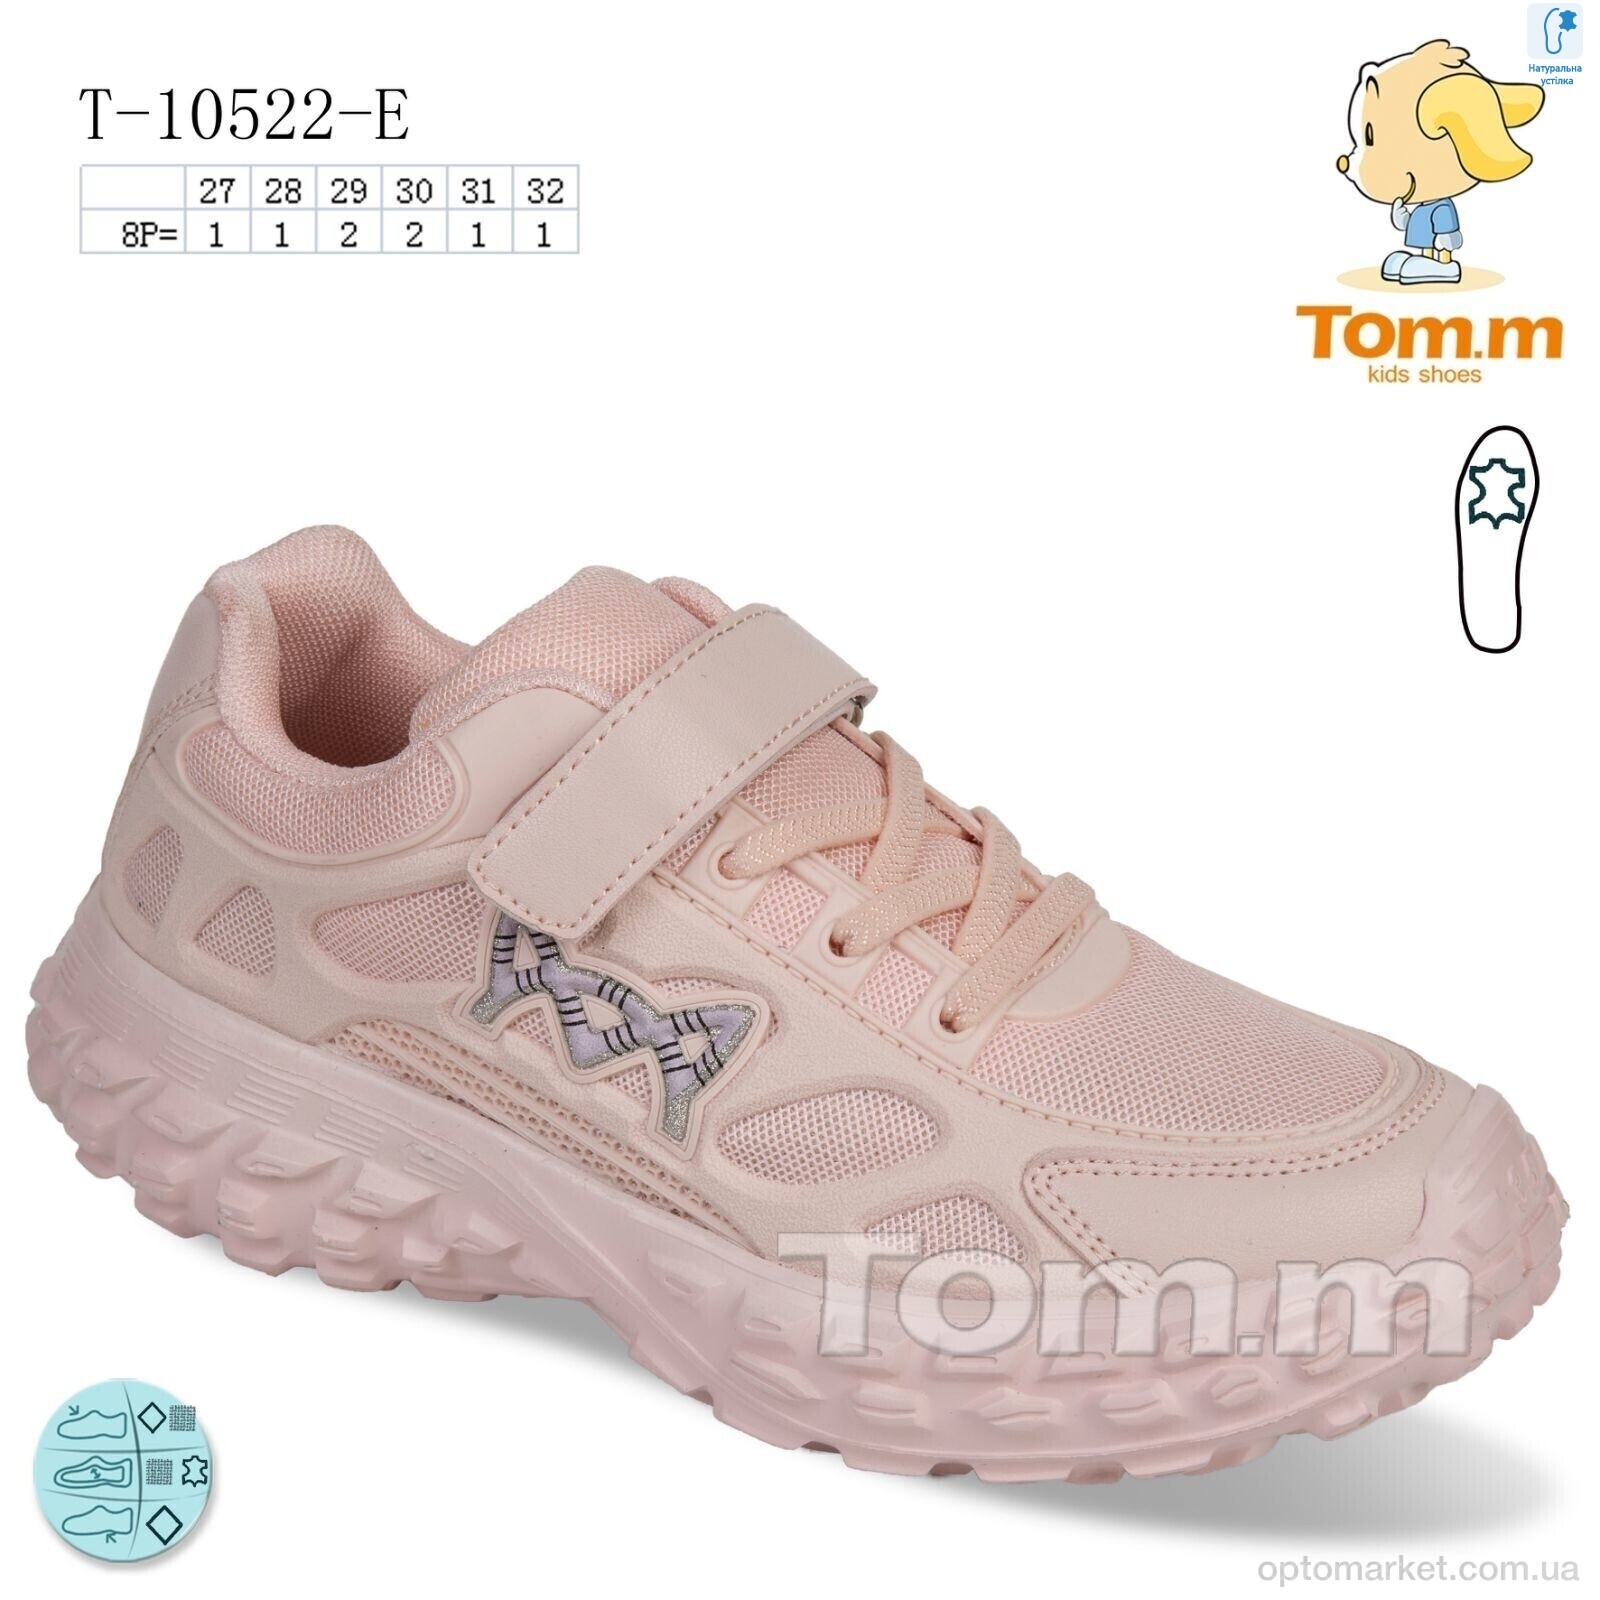 Купить Кросівки дитячі T-10522-E TOM.M рожевий, фото 1